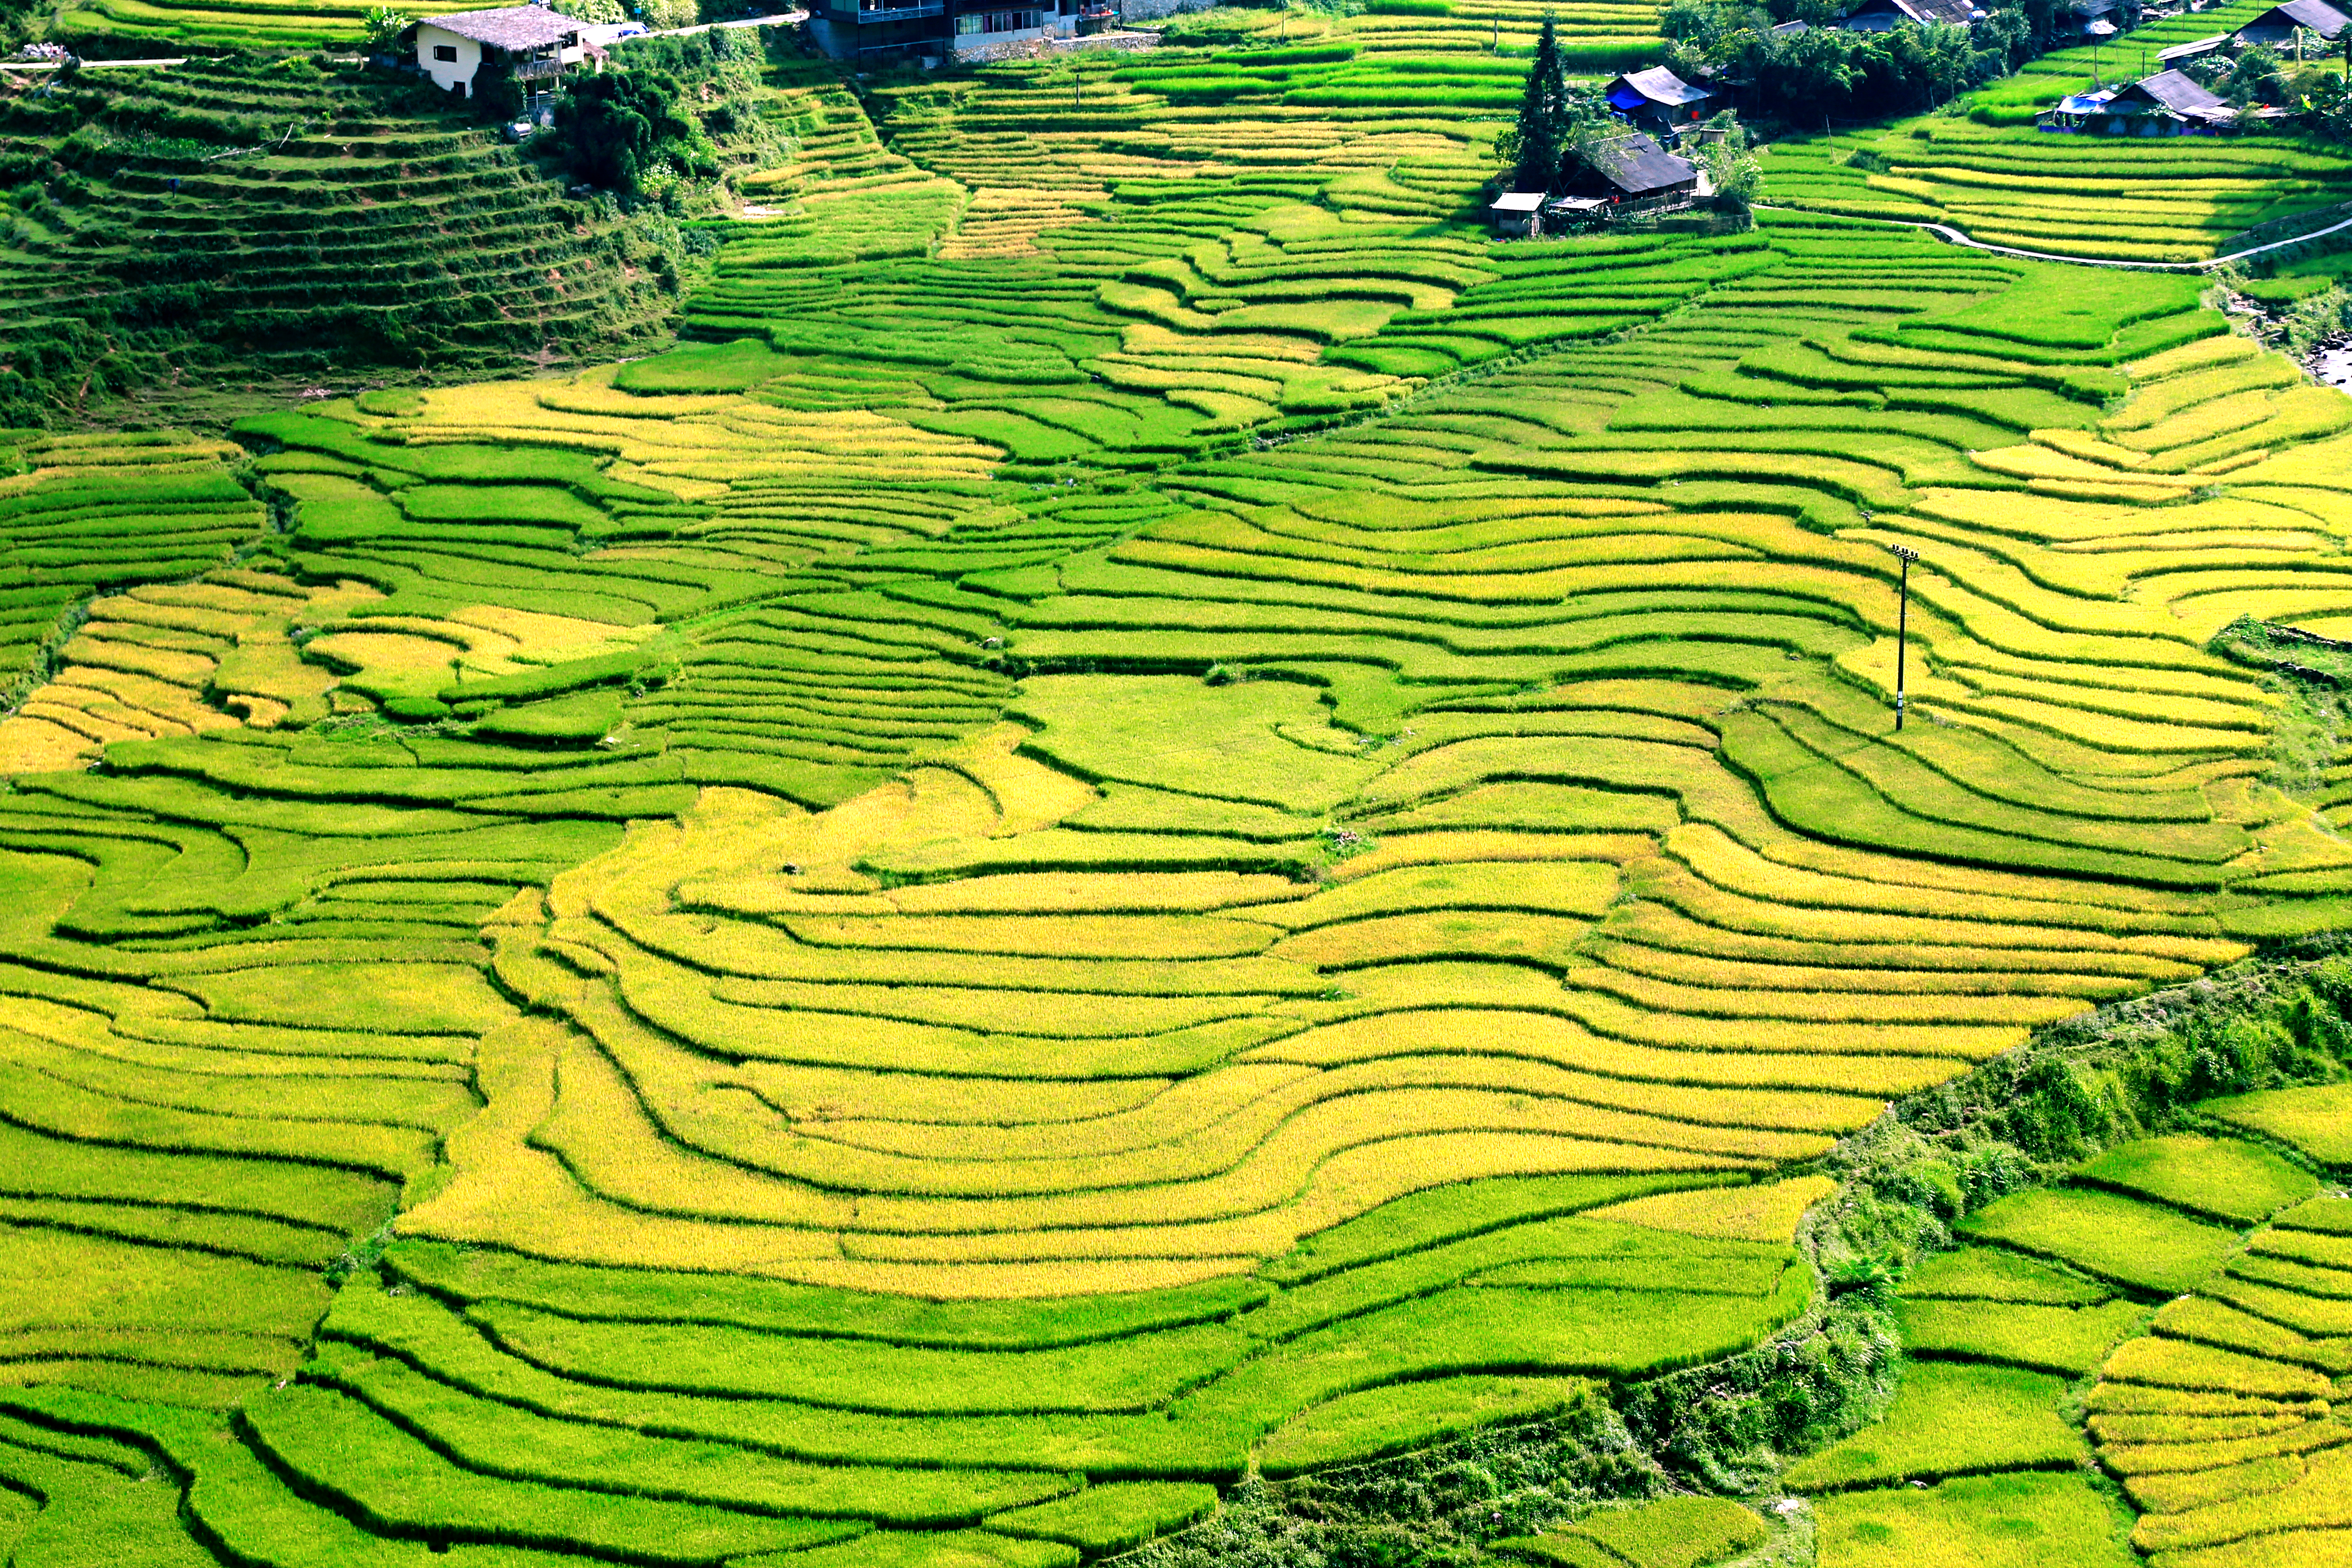 Красота «золотого сезона» в долине Мыонг Хоа в Са Па, провинция Лаокай, северный Вьетнам